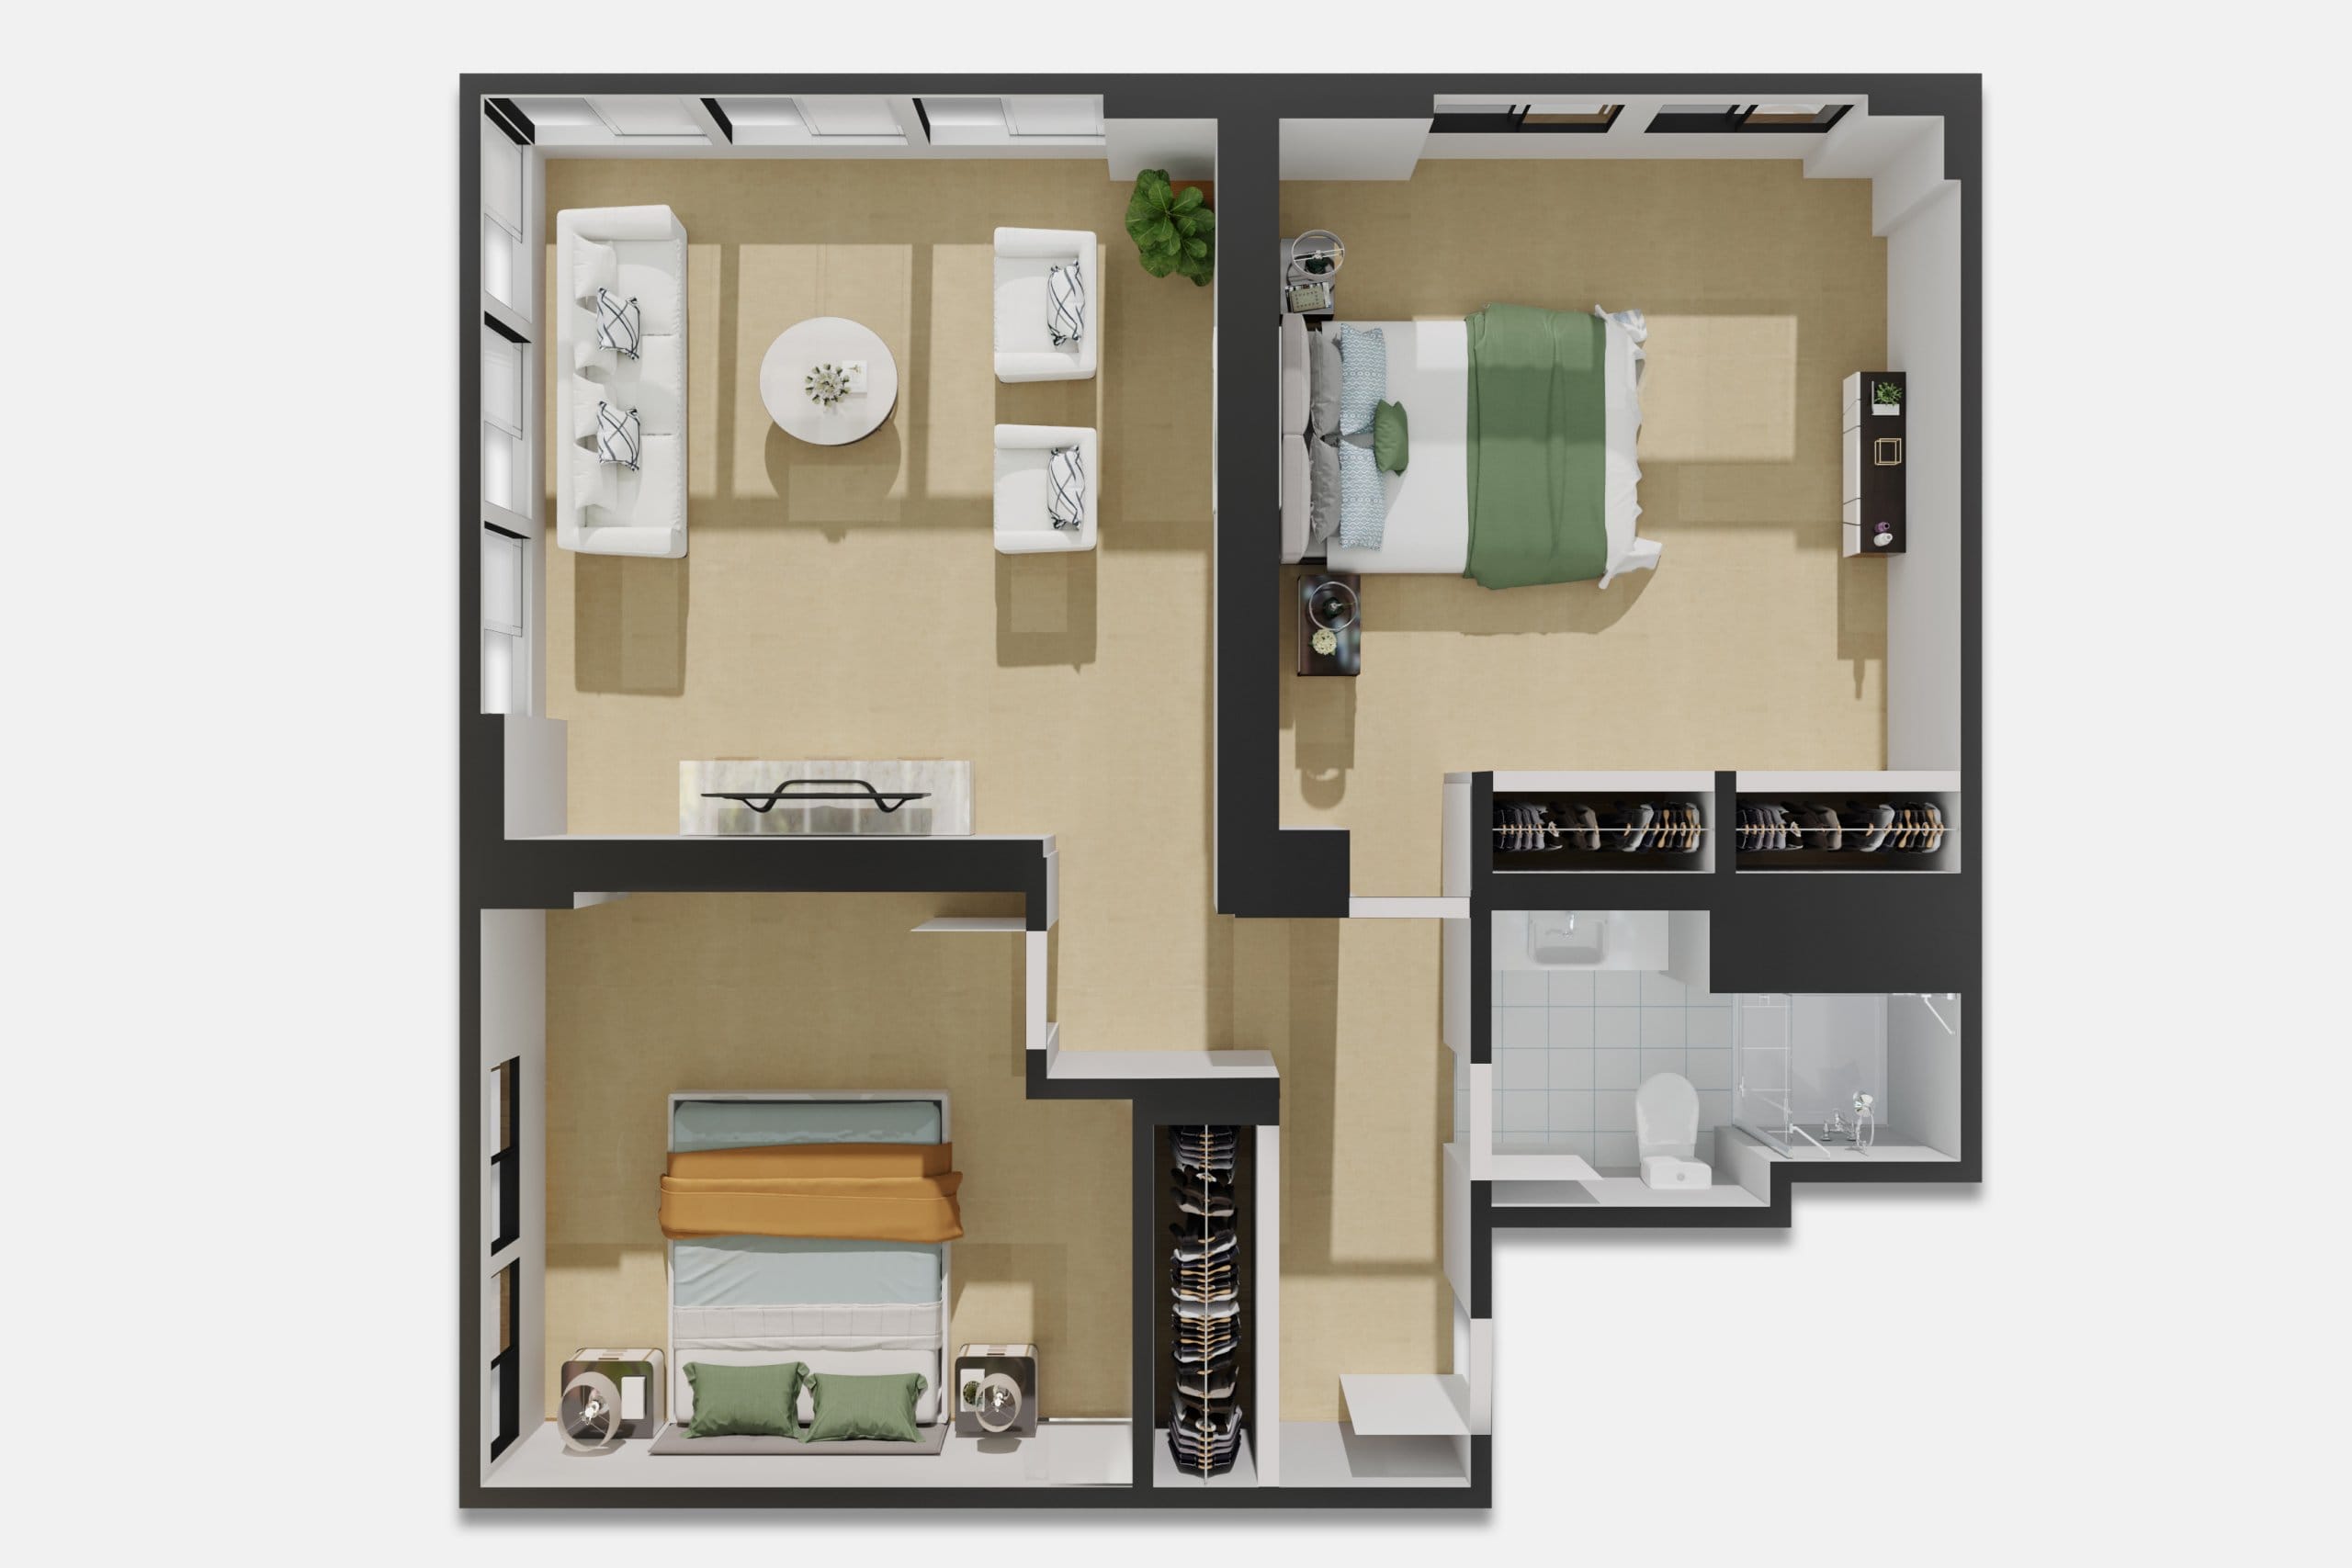 The Sequoias SF 2-Bedroom Garden Court Floor Plan